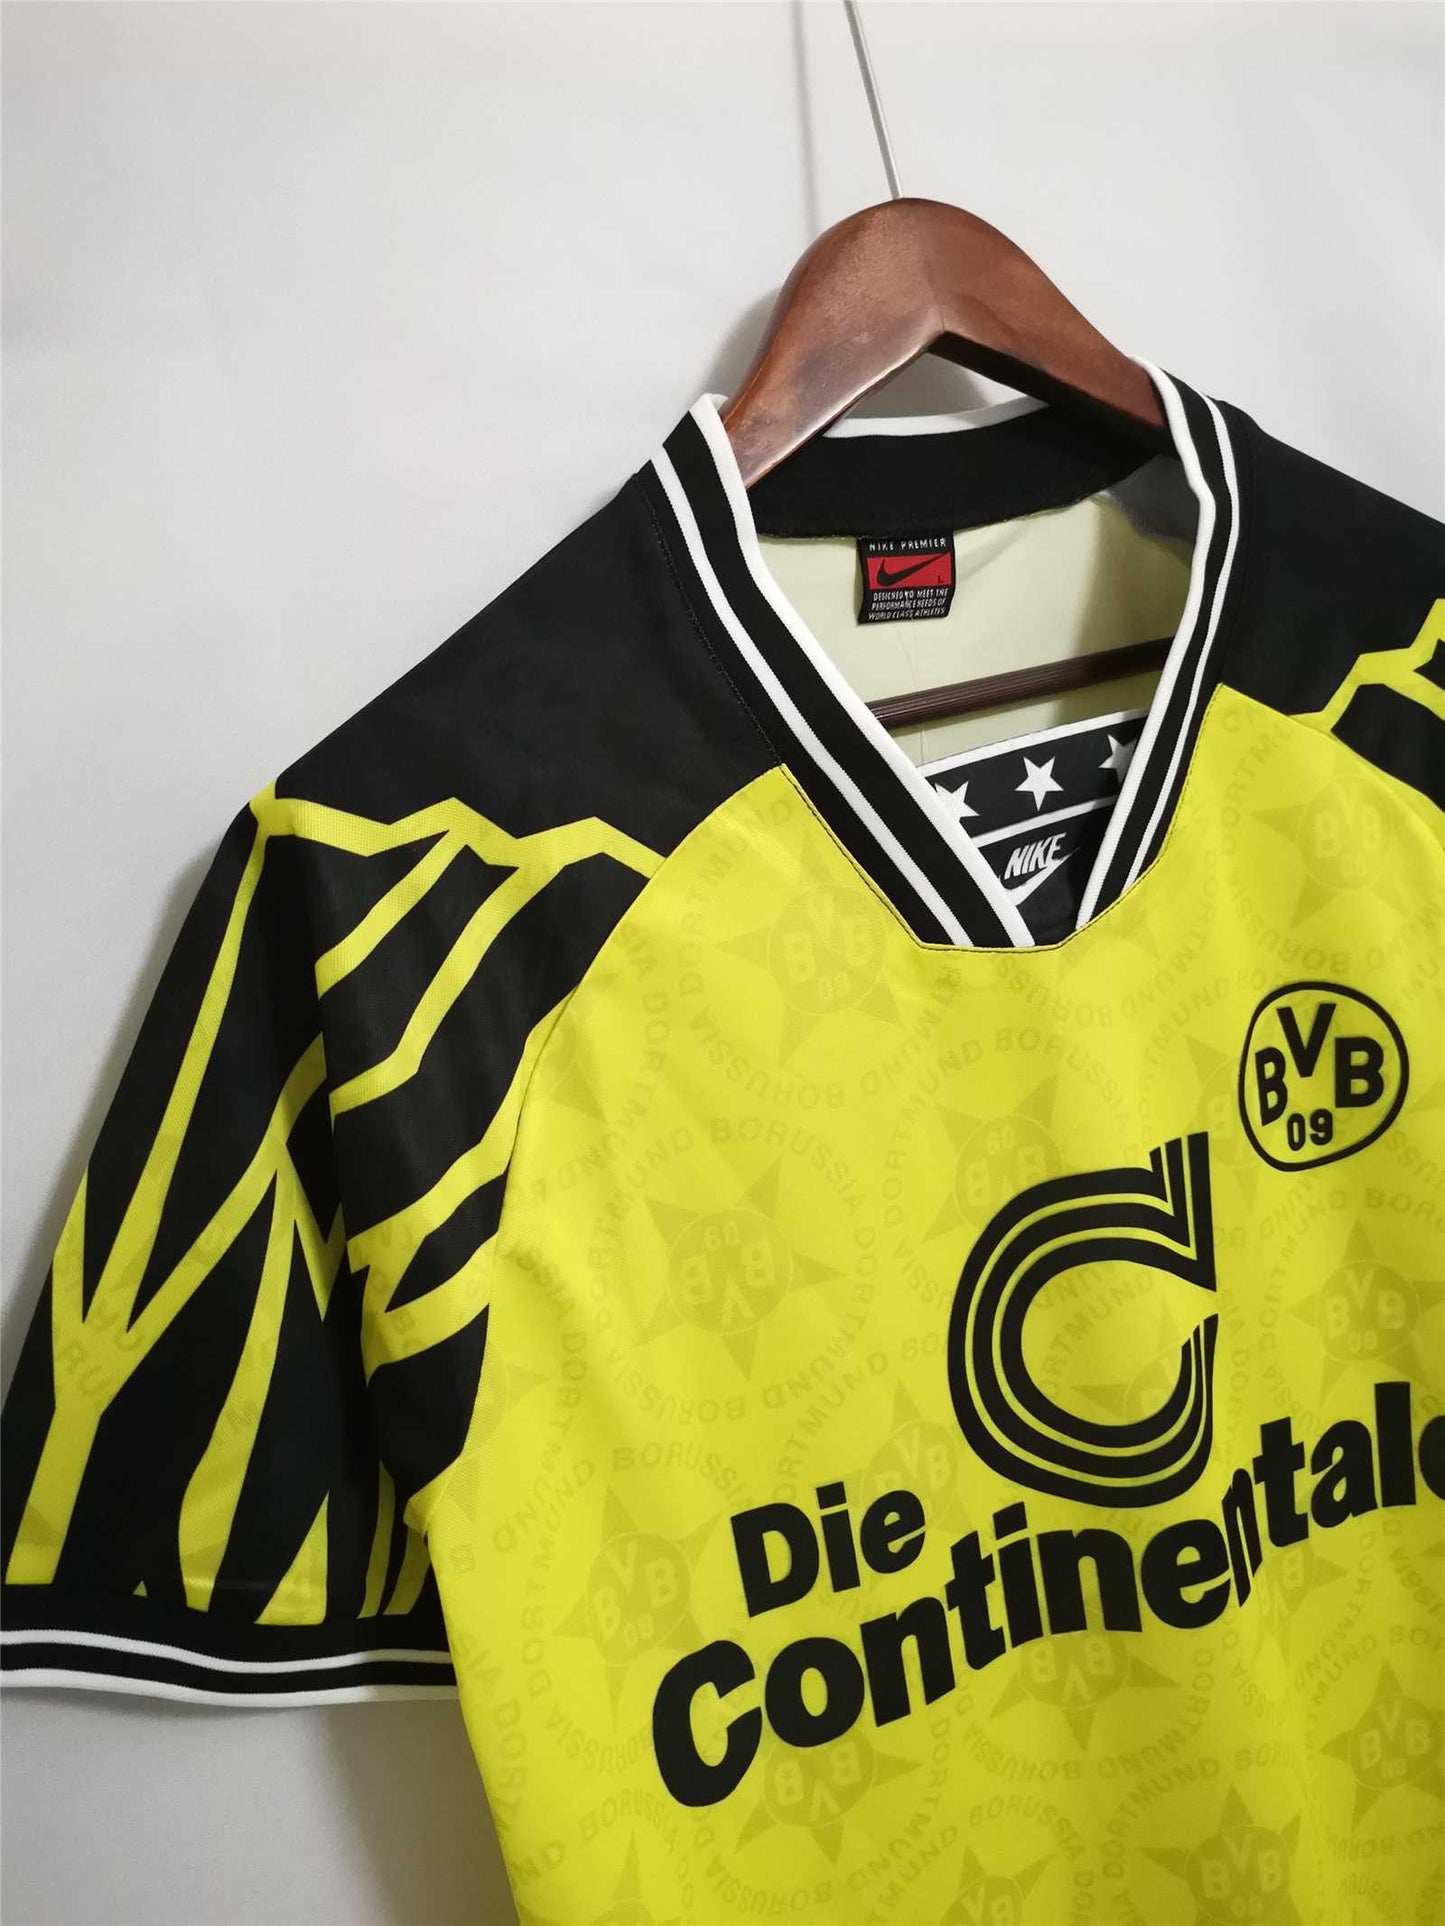 Borussia Dortmund 94-95 Home Shirt